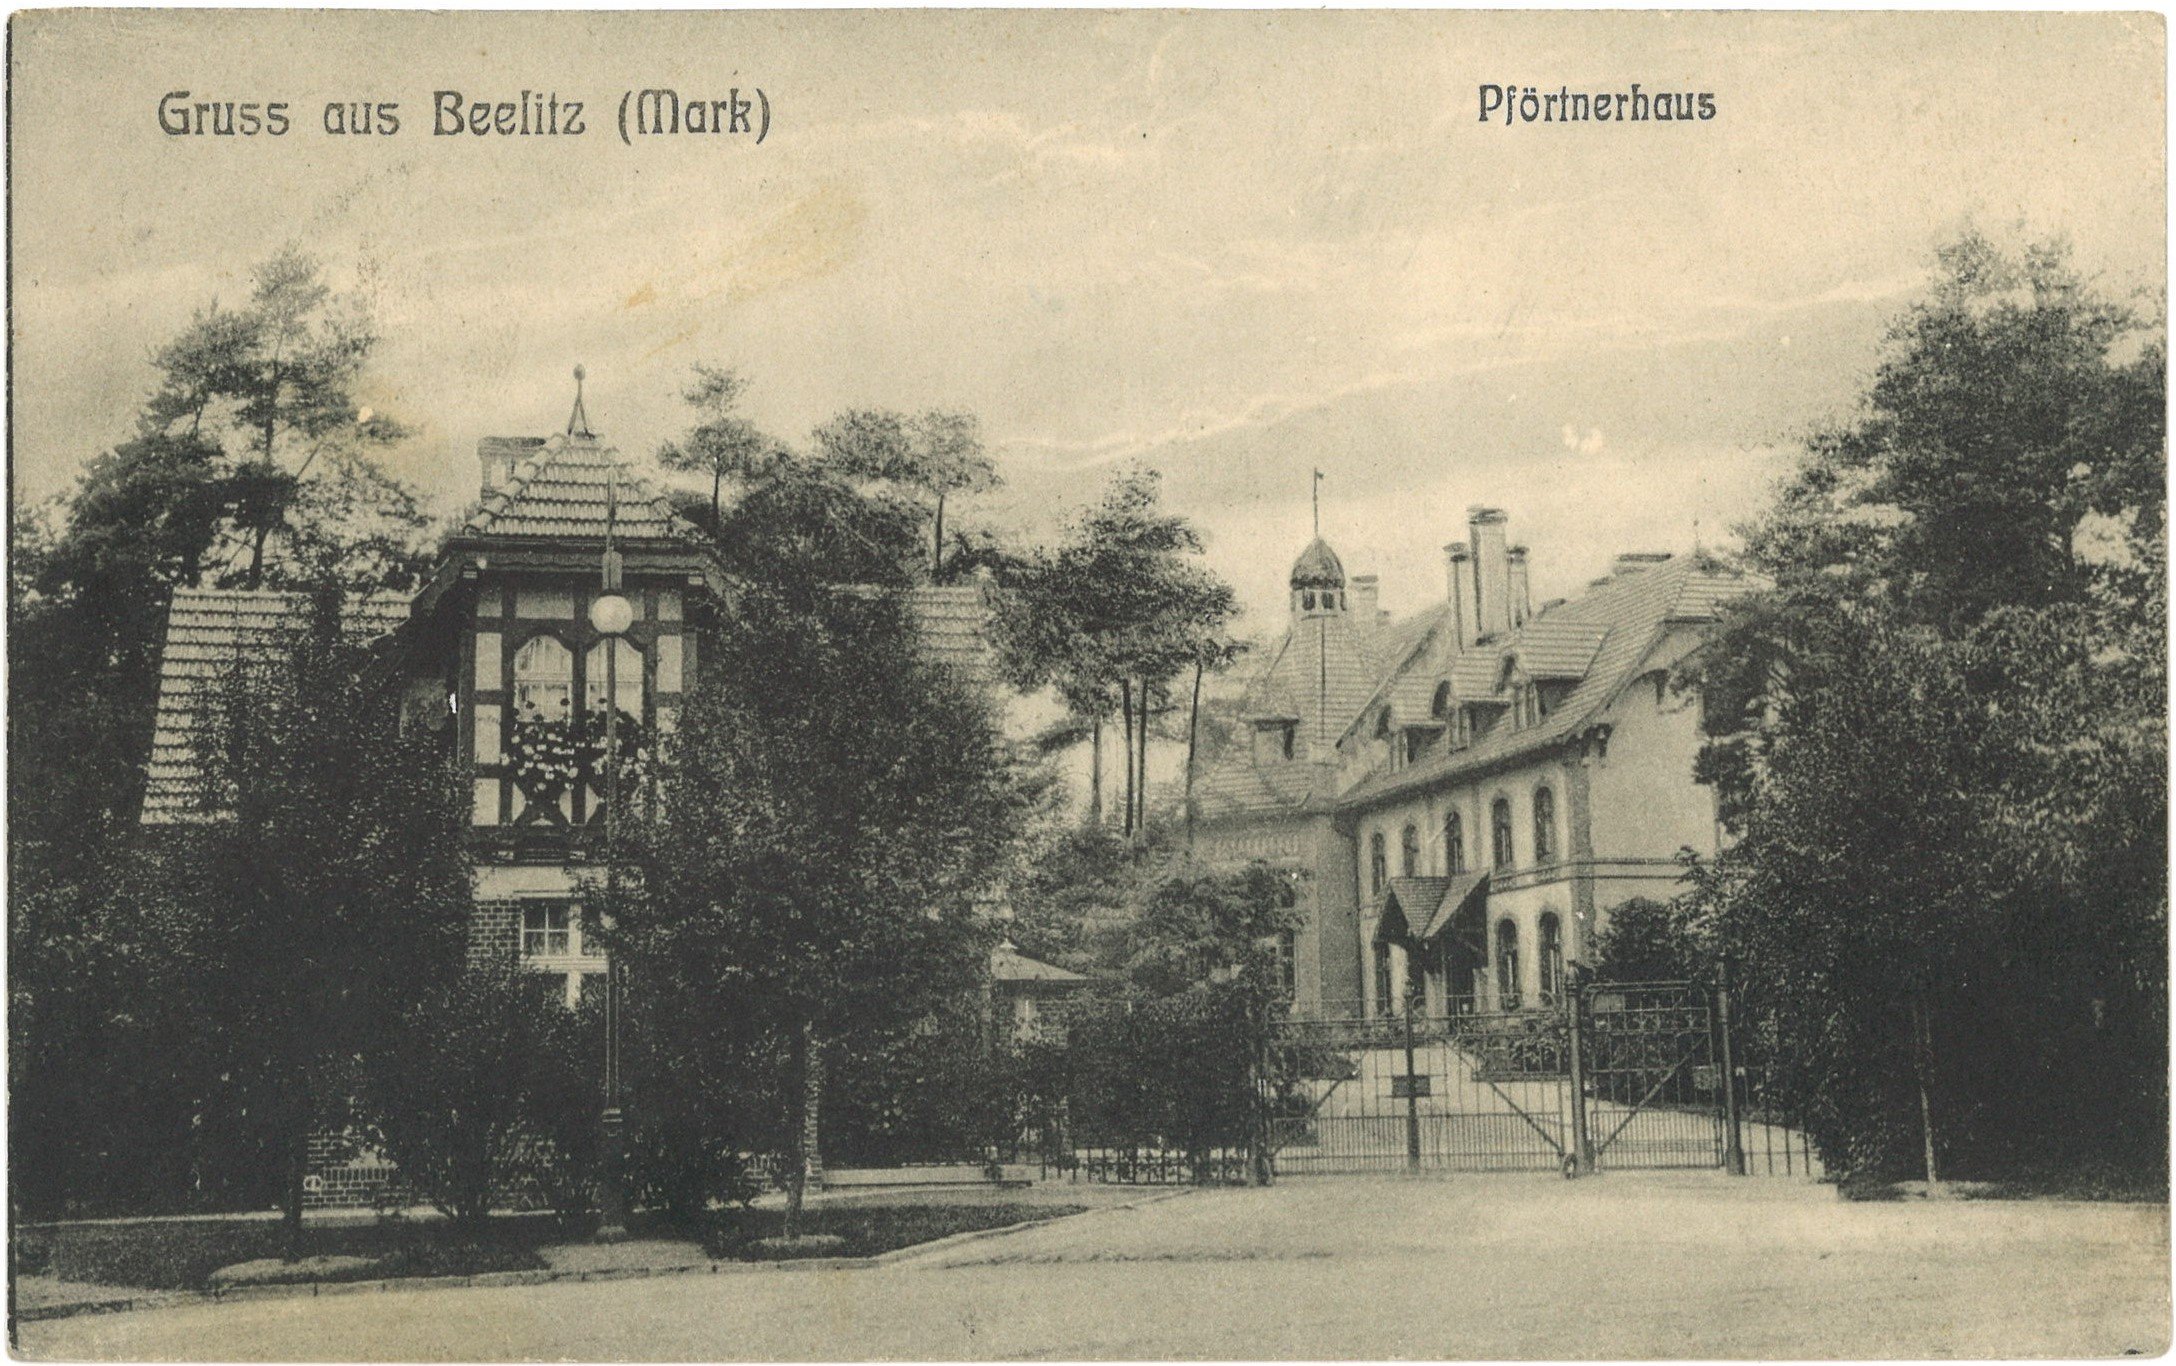 Beelitz-Heilstätten: Pförtnerhaus (Landesgeschichtliche Vereinigung für die Mark Brandenburg e.V. CC BY)